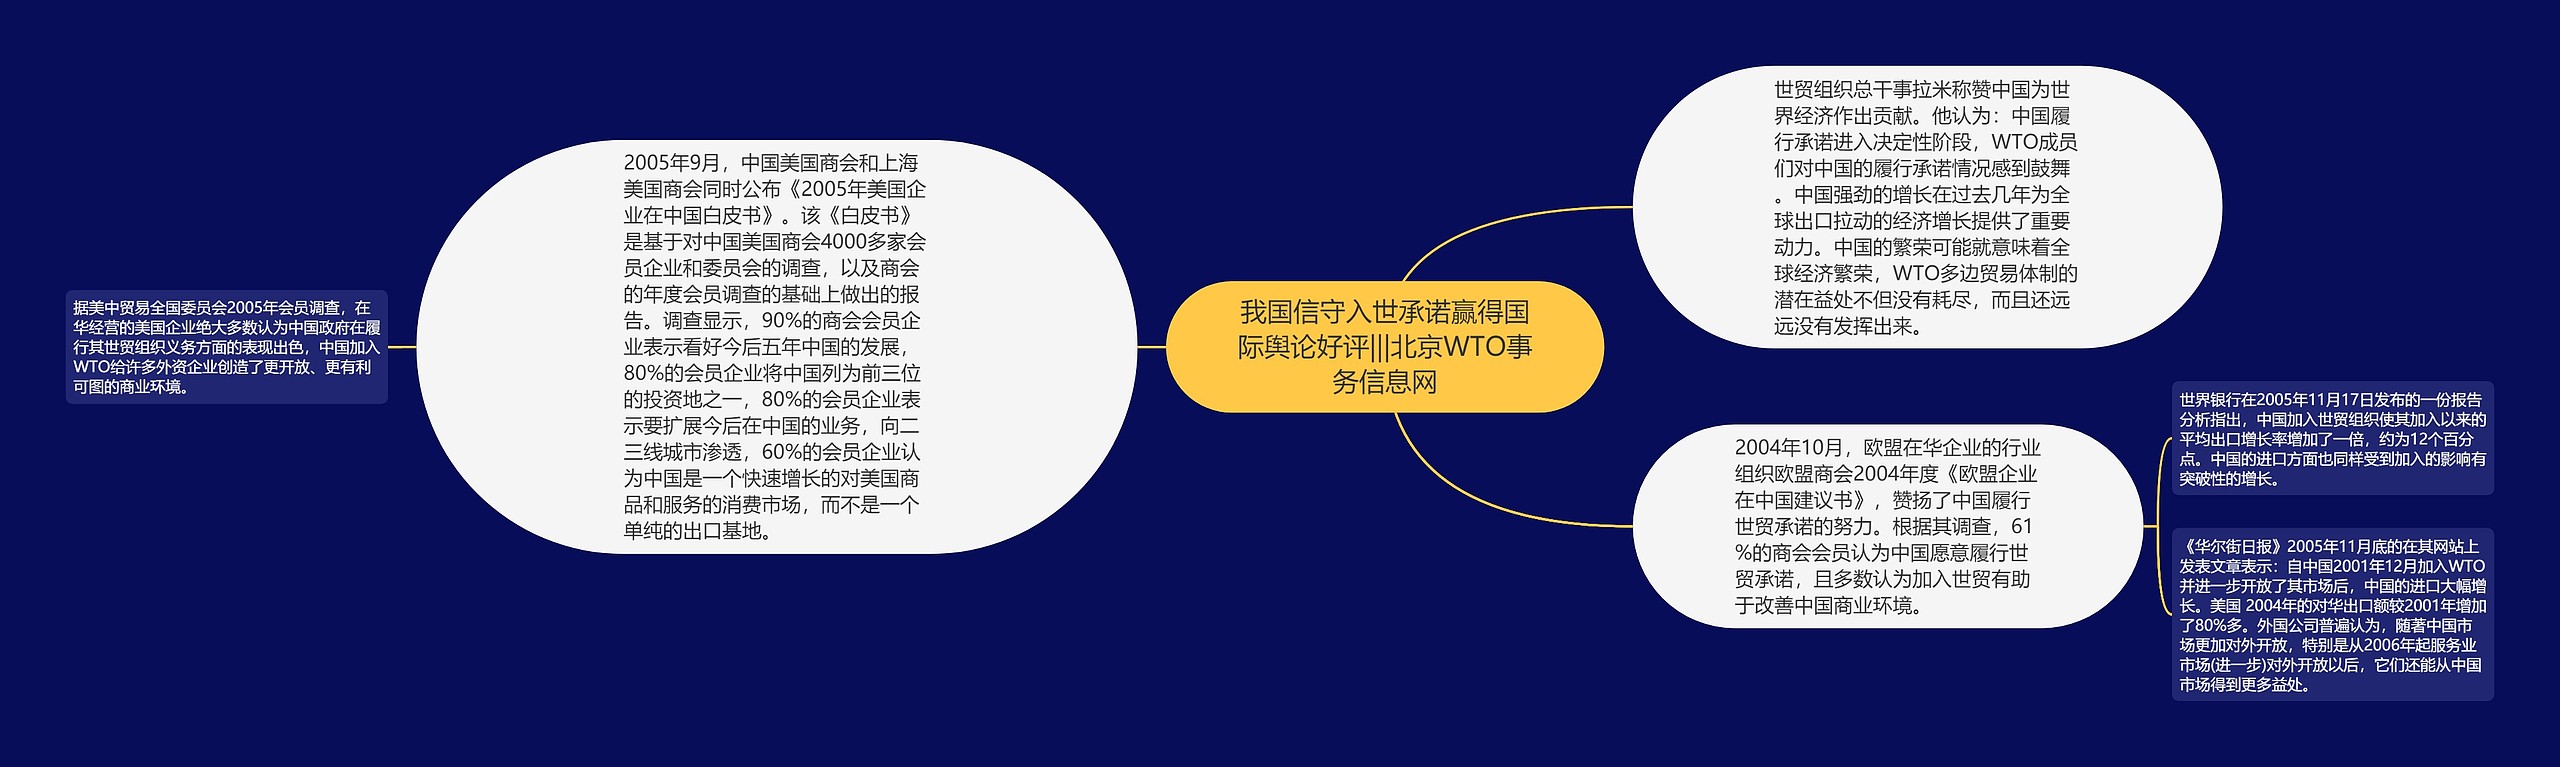 我国信守入世承诺赢得国际舆论好评|||北京WTO事务信息网思维导图